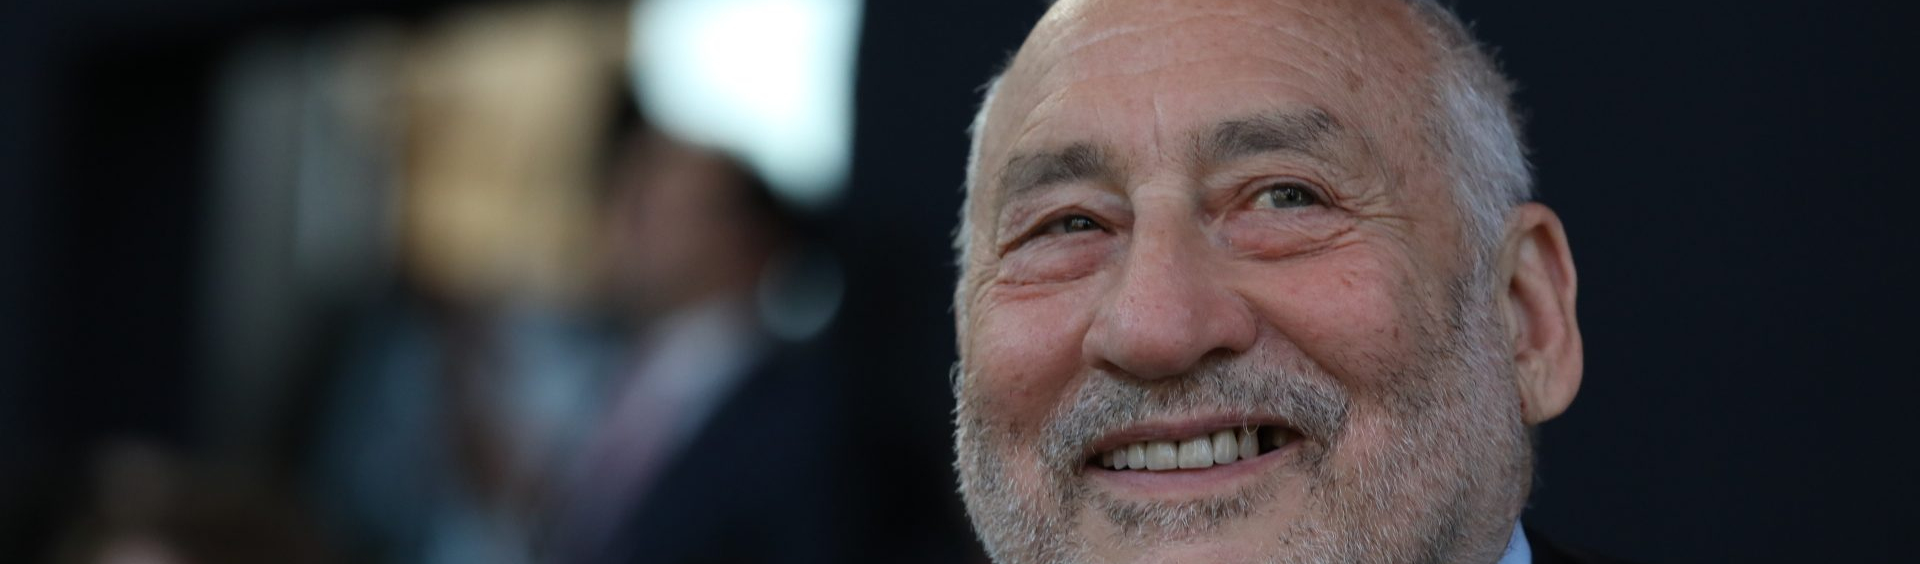 Banqueiros vão perder na Argentina: "sabiam do risco, não foram enganados", alerta Stiglitz